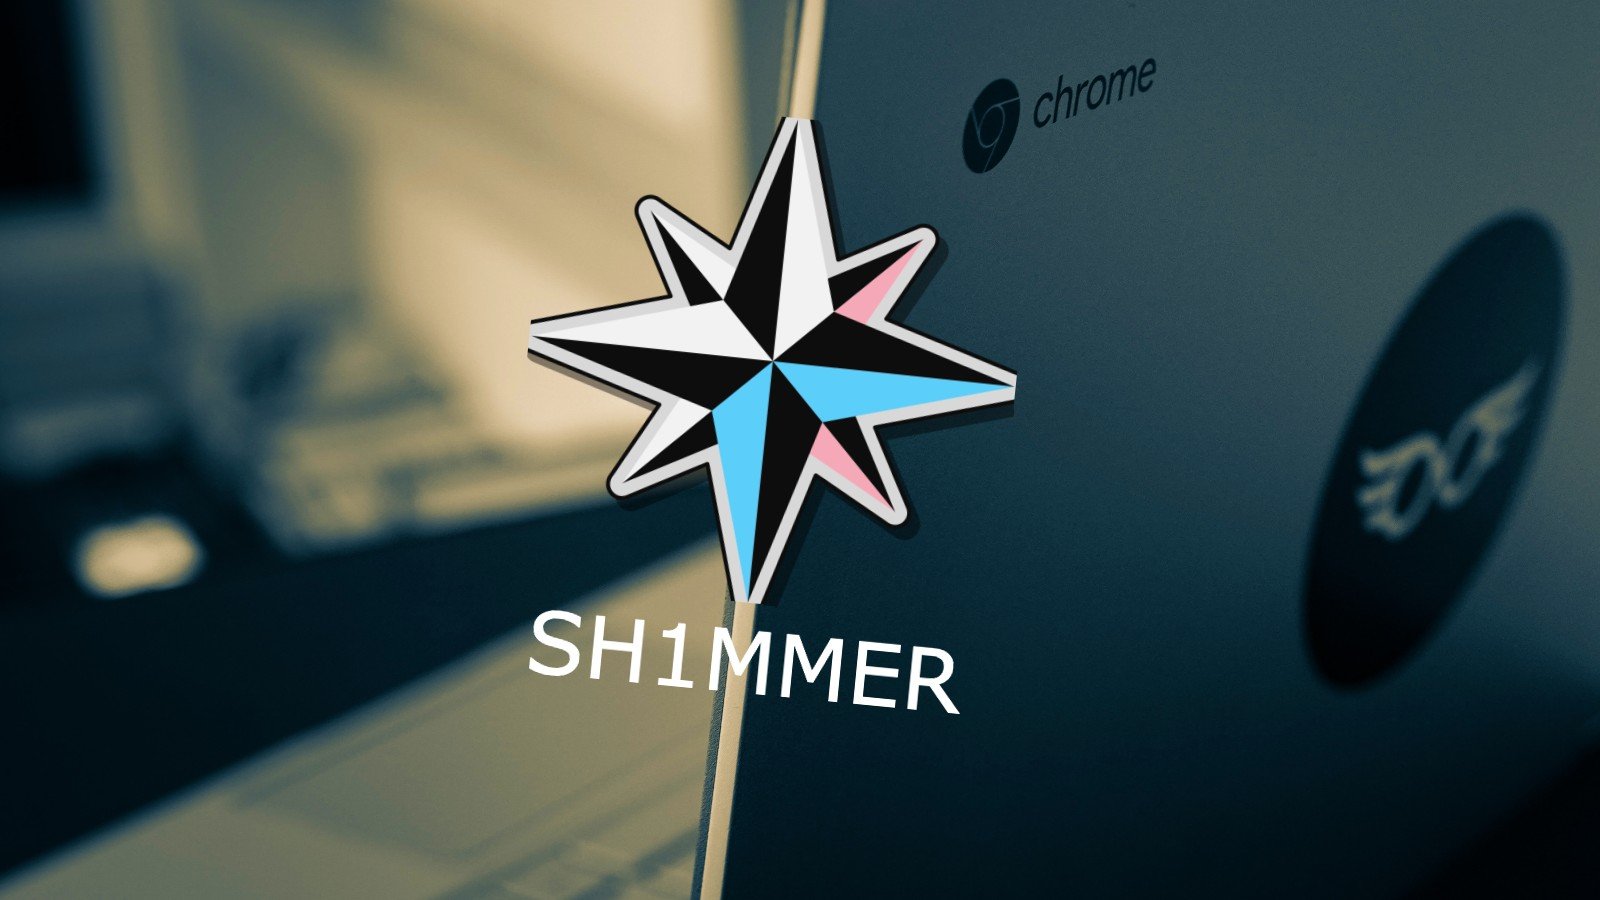 Sh1mmer logo over a Chromebook